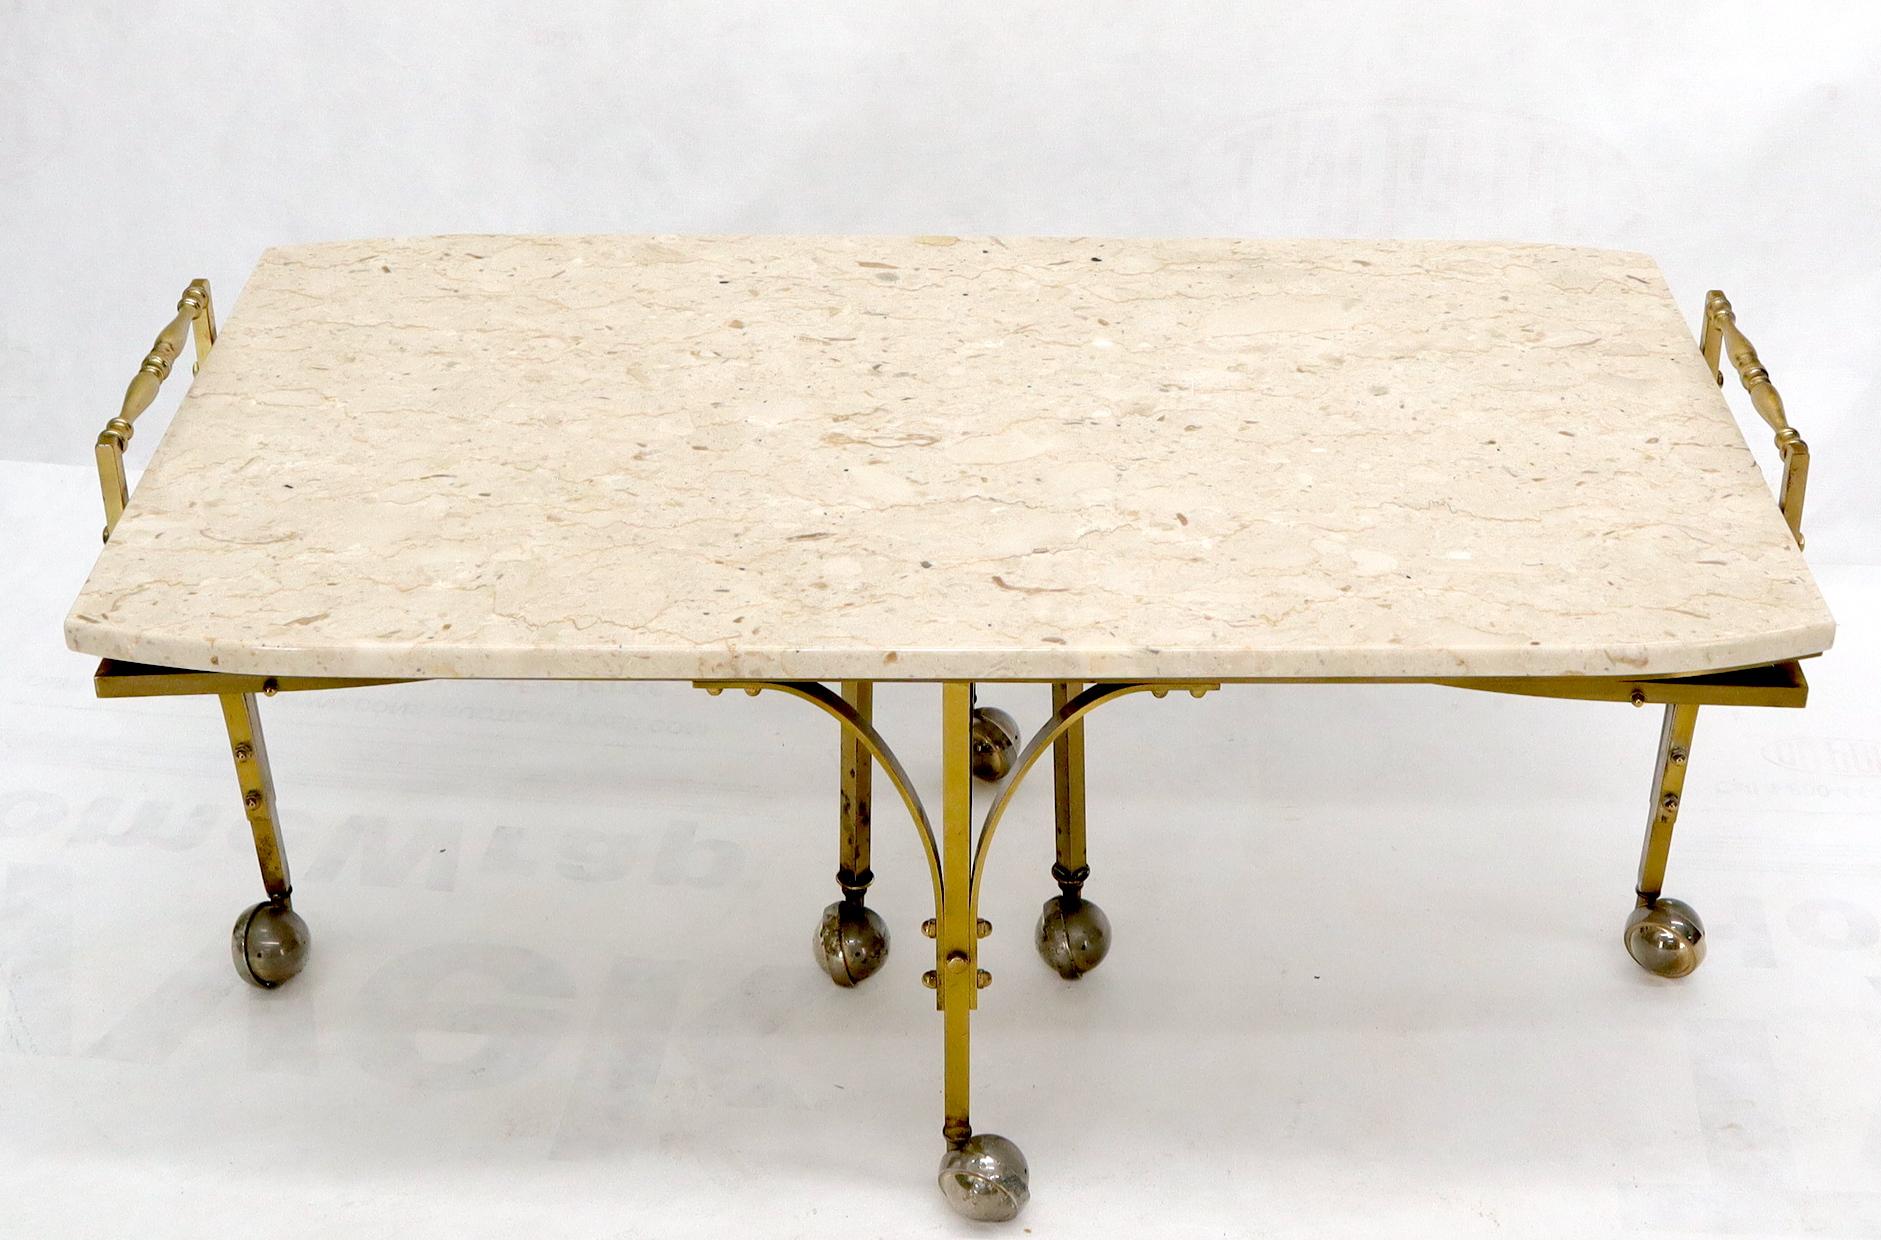 Table basse en laiton sur roulettes avec plateau en travertin et extensions ou feuilles extensibles en forme de fer. Table basse entièrement réglable.